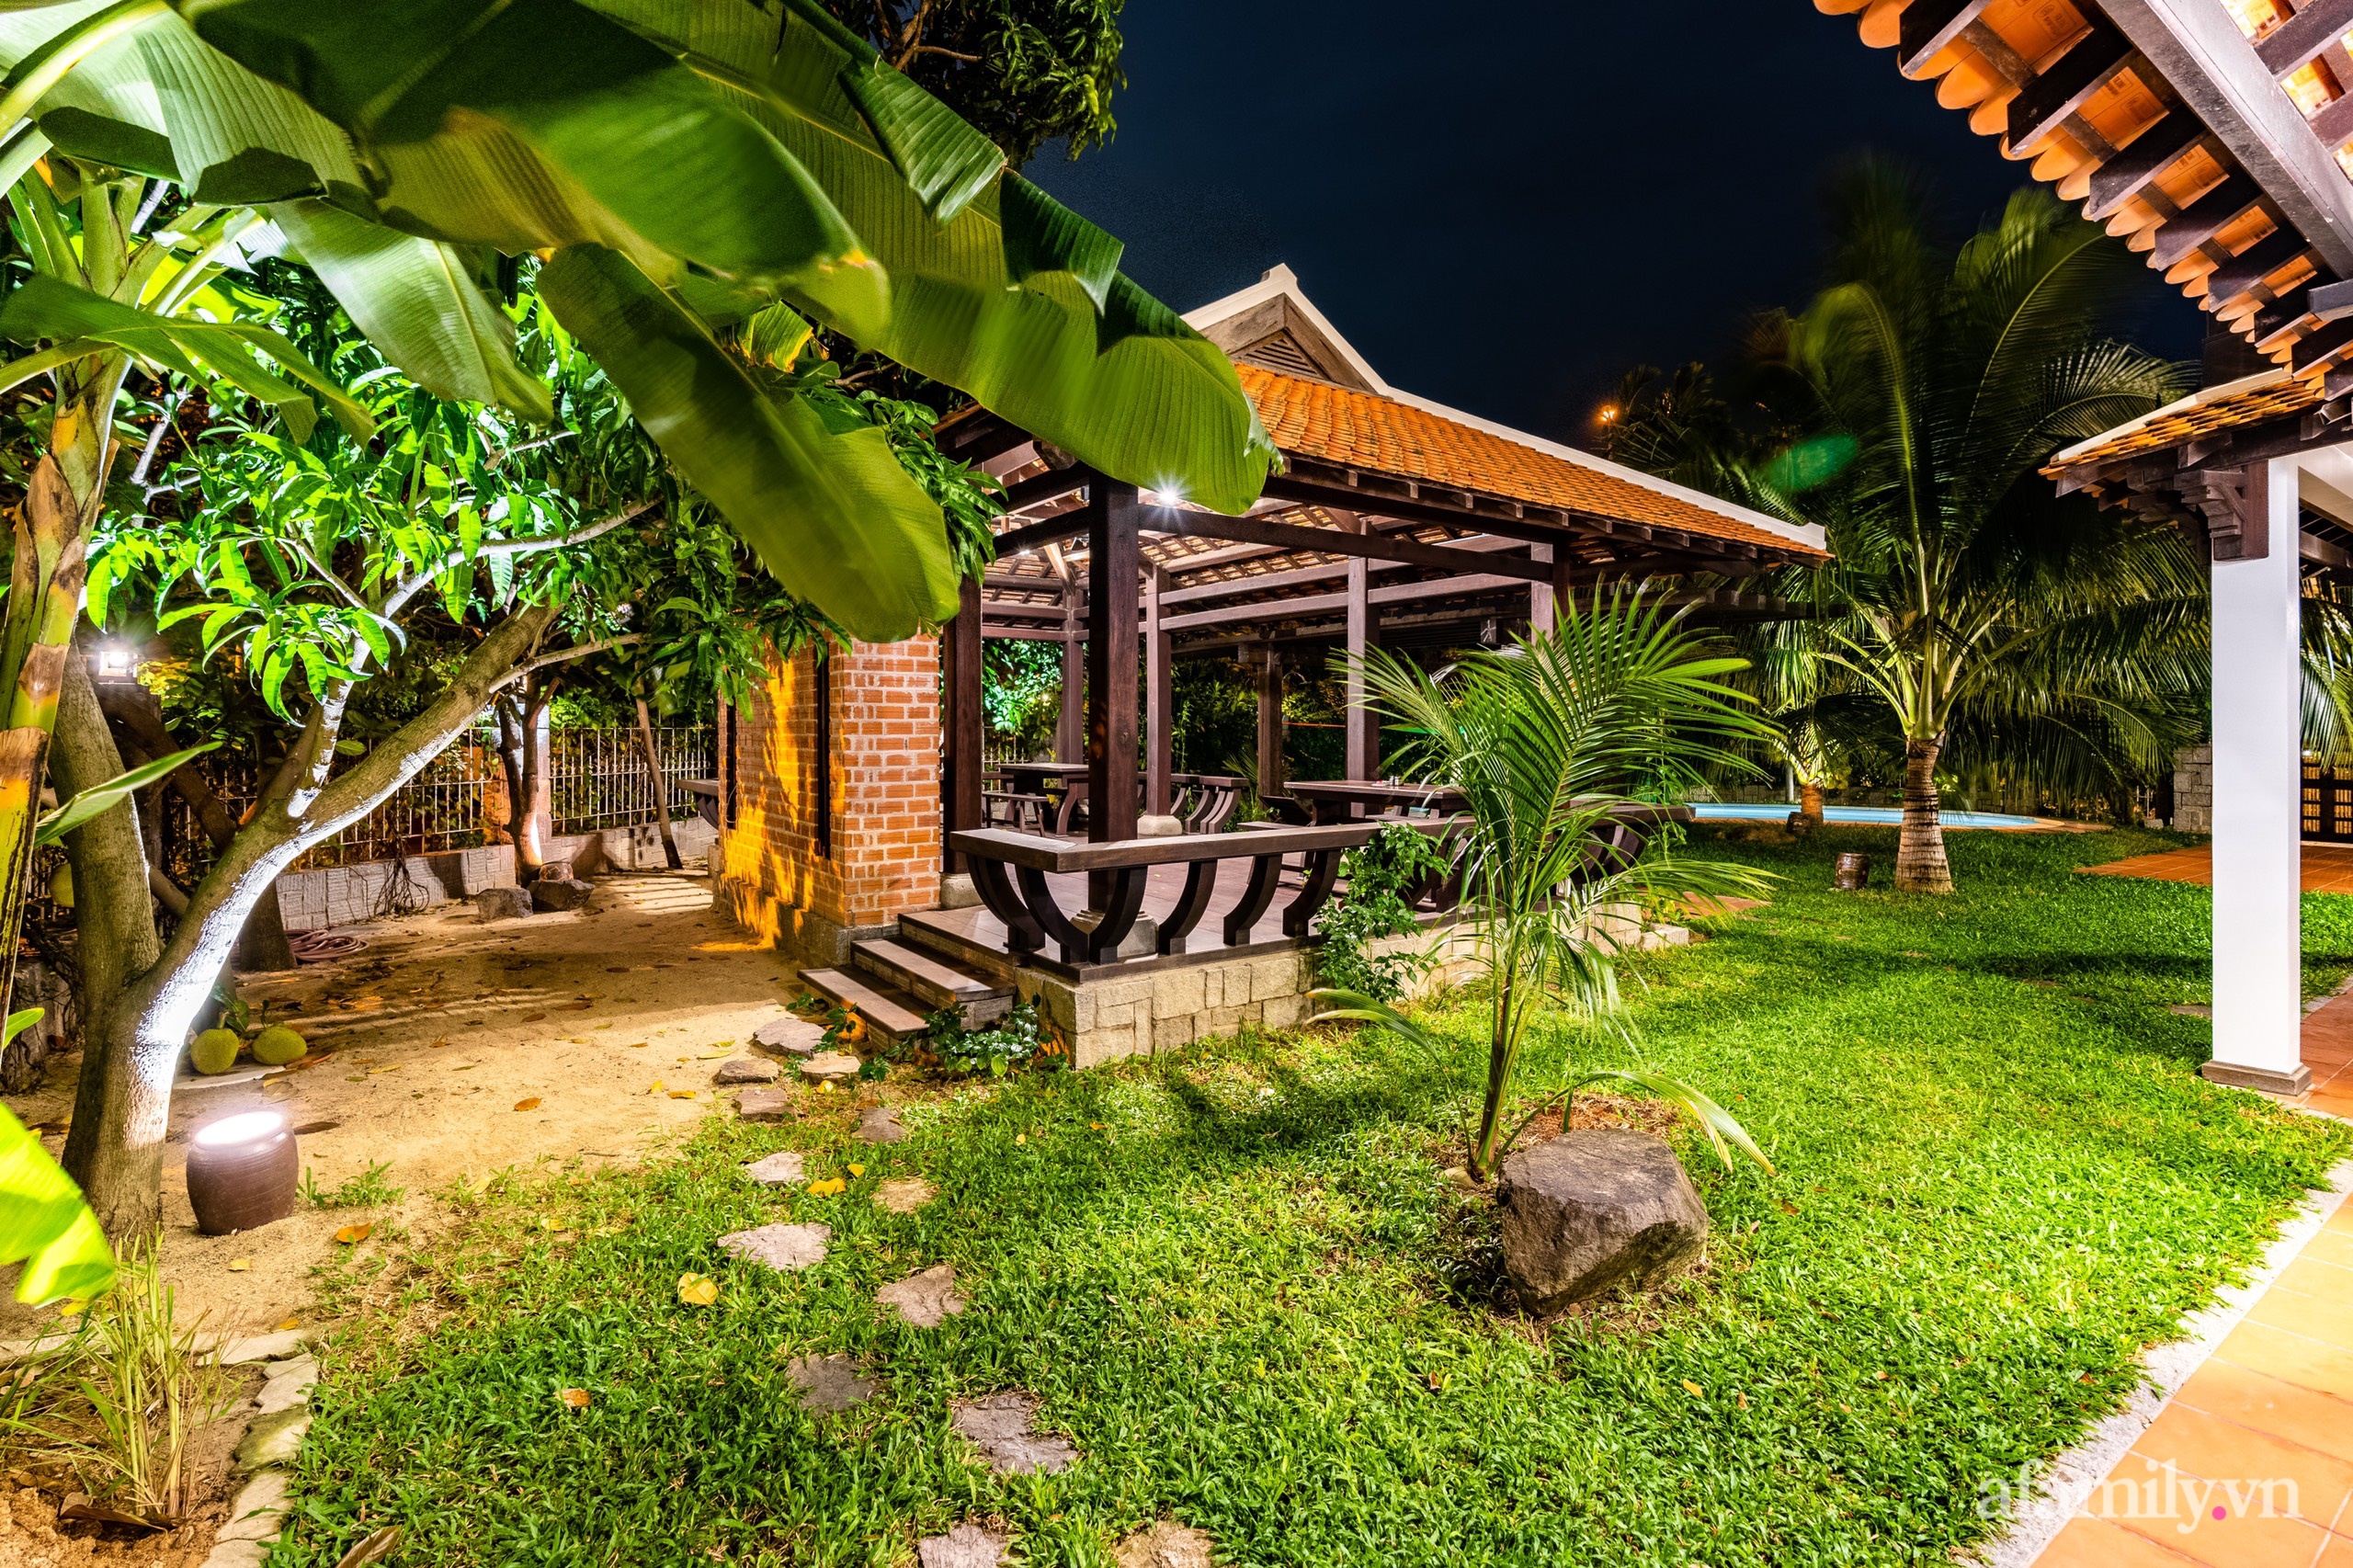 Căn nhà vườn xây 10 năm vẫn đẹp hút mắt với nội thất gỗ và cây xanh quanh nhà ở Nha Trang - Ảnh 9.